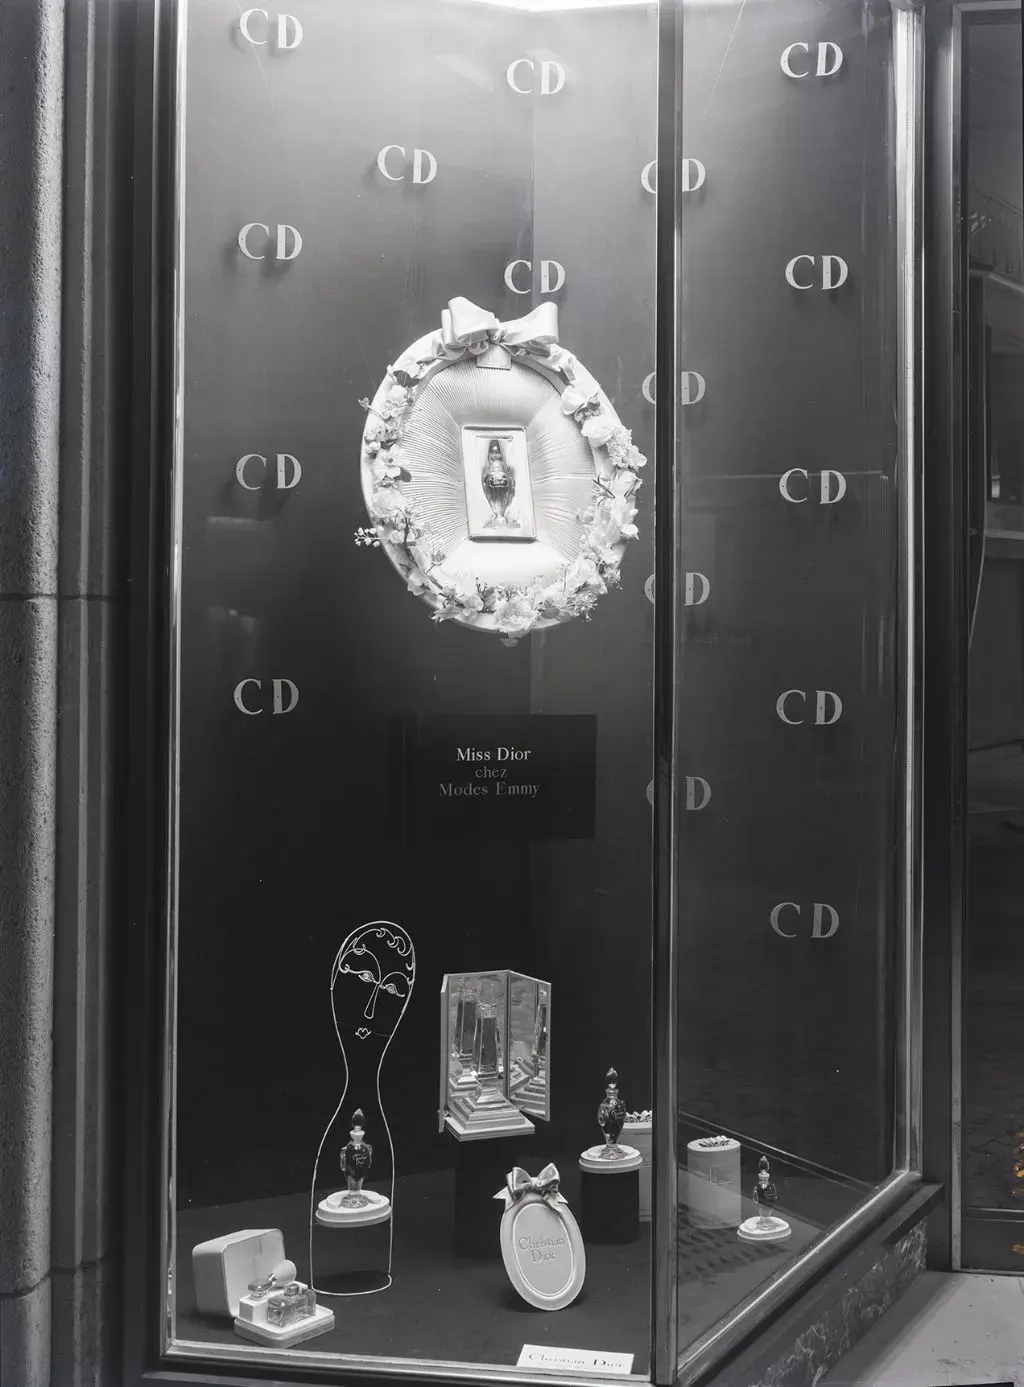 Das 1950 von Jean Tinguely gestaltete Schaufenster für Emmy Modes